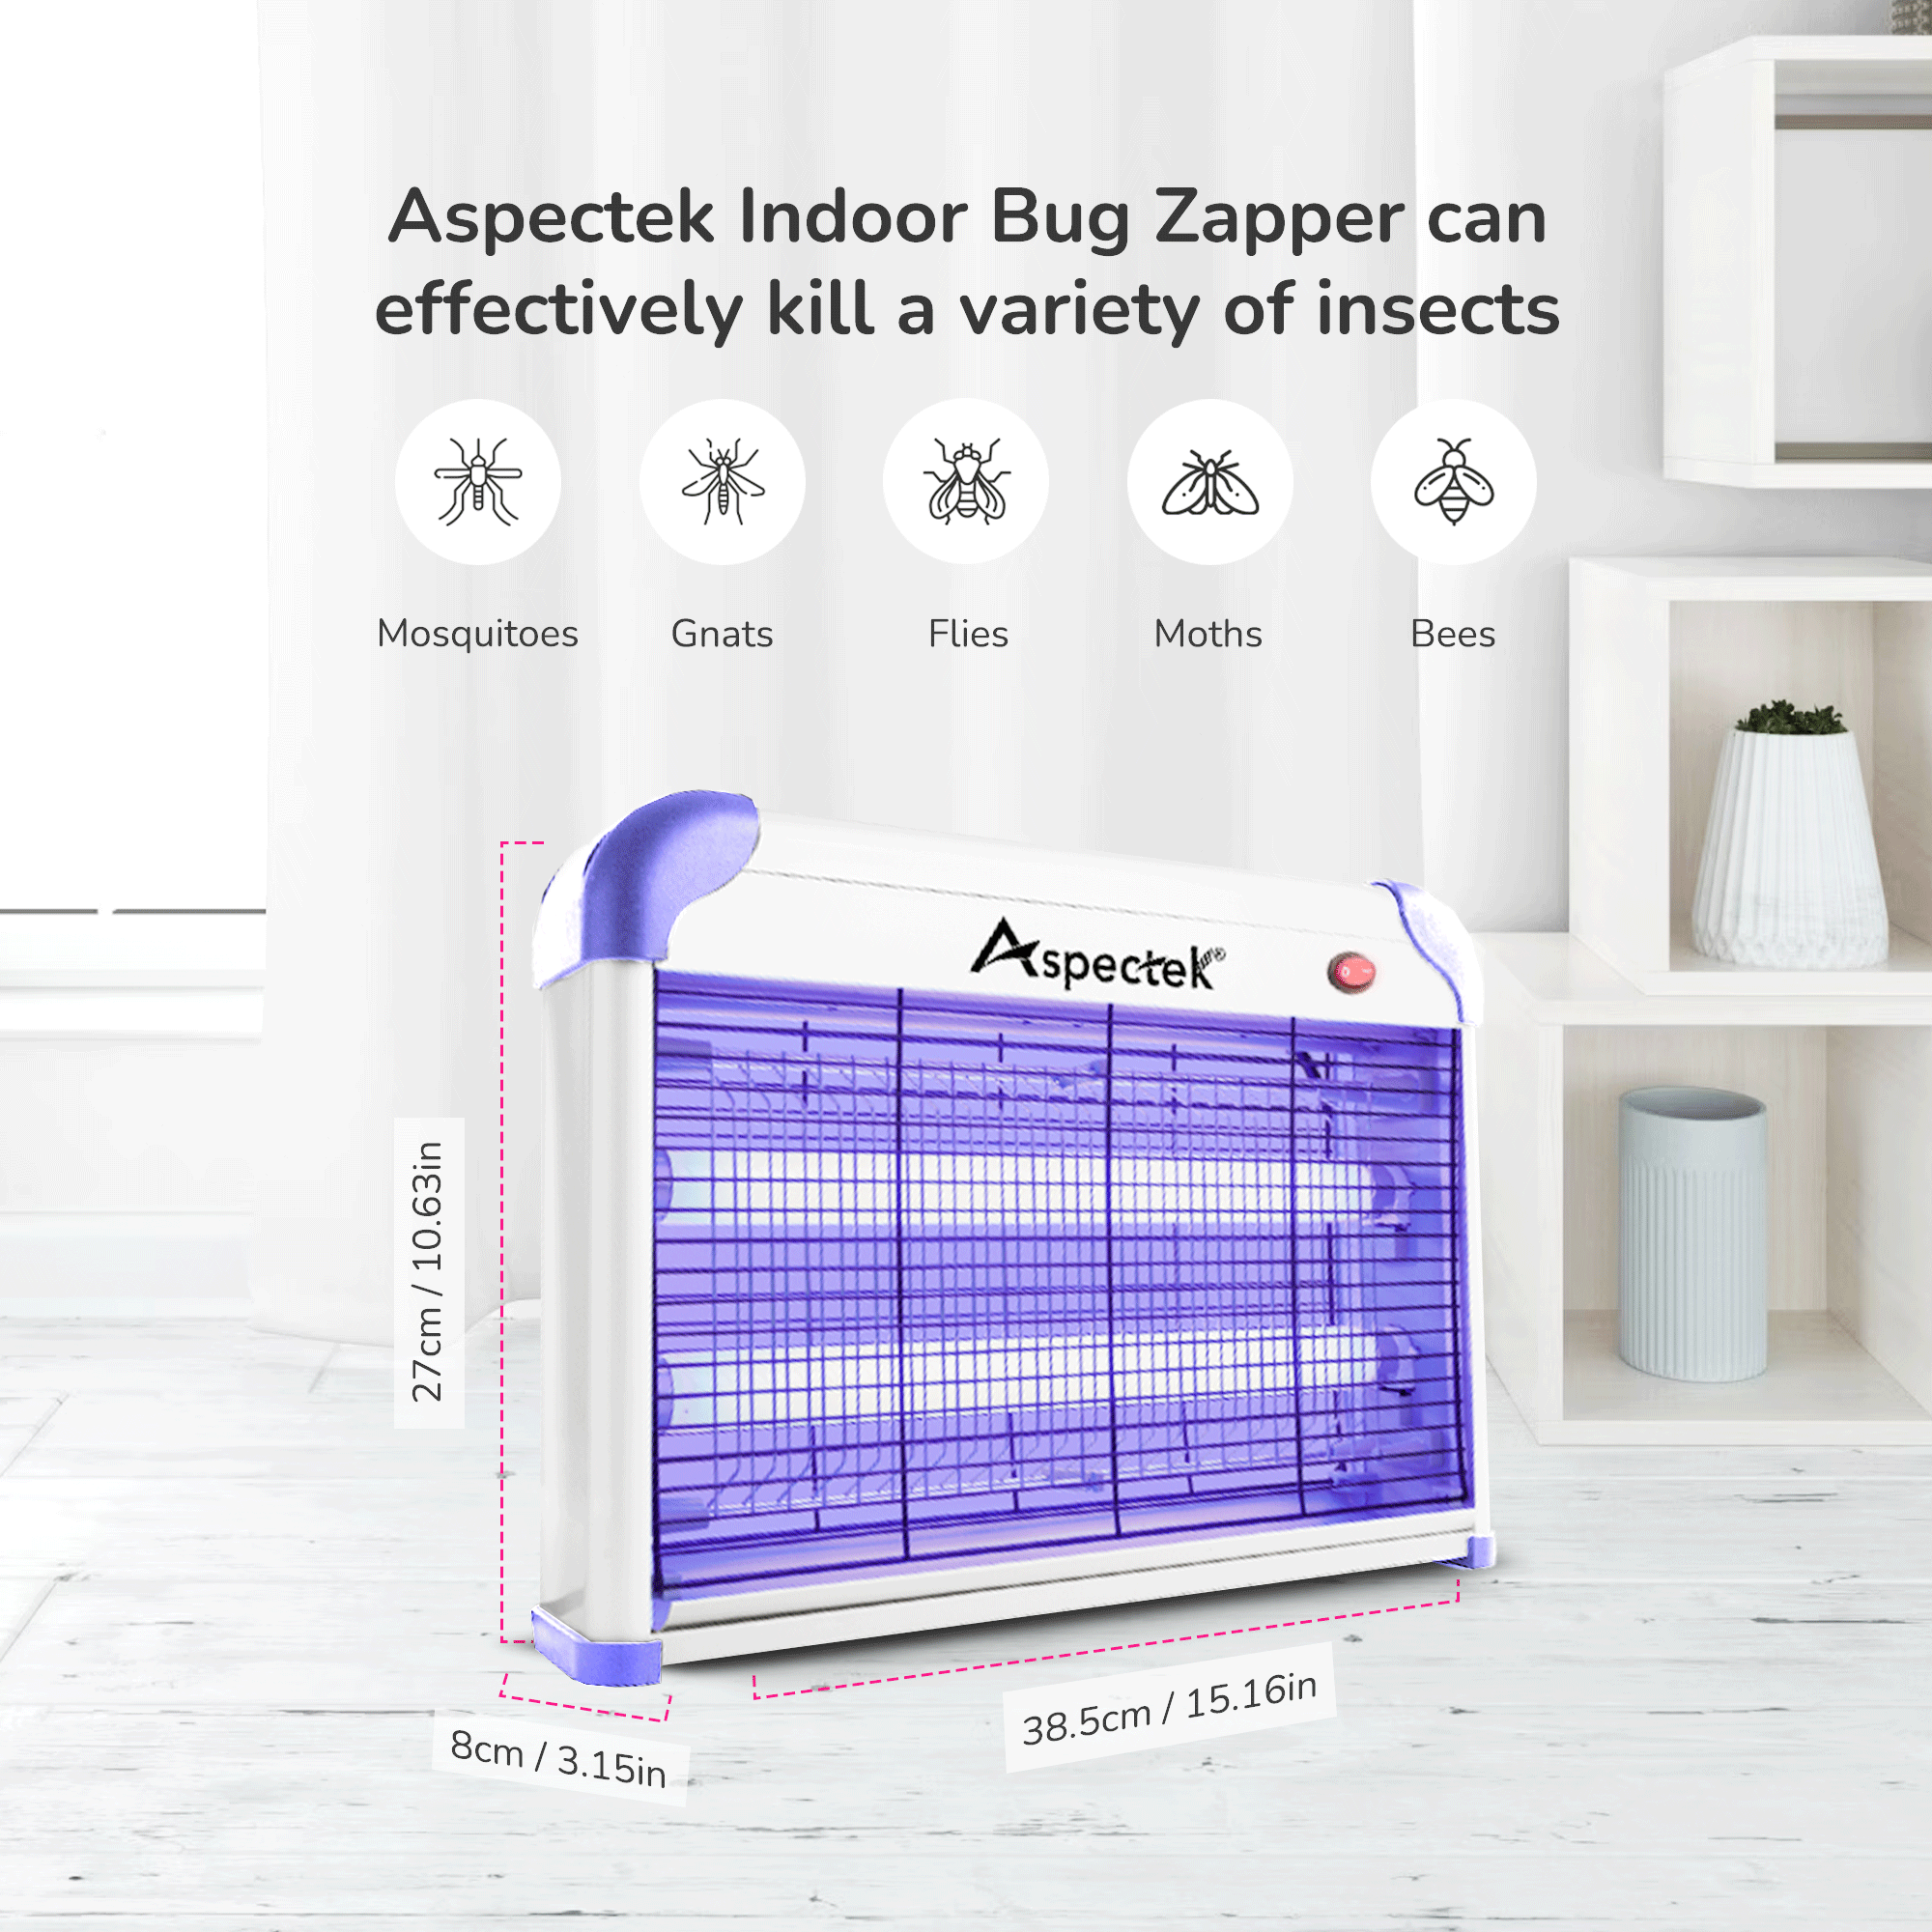 Aspectek 20W Indoor Bug Zapper Includes 2 Replacement Bulbs PURPLE + 2 BULBS